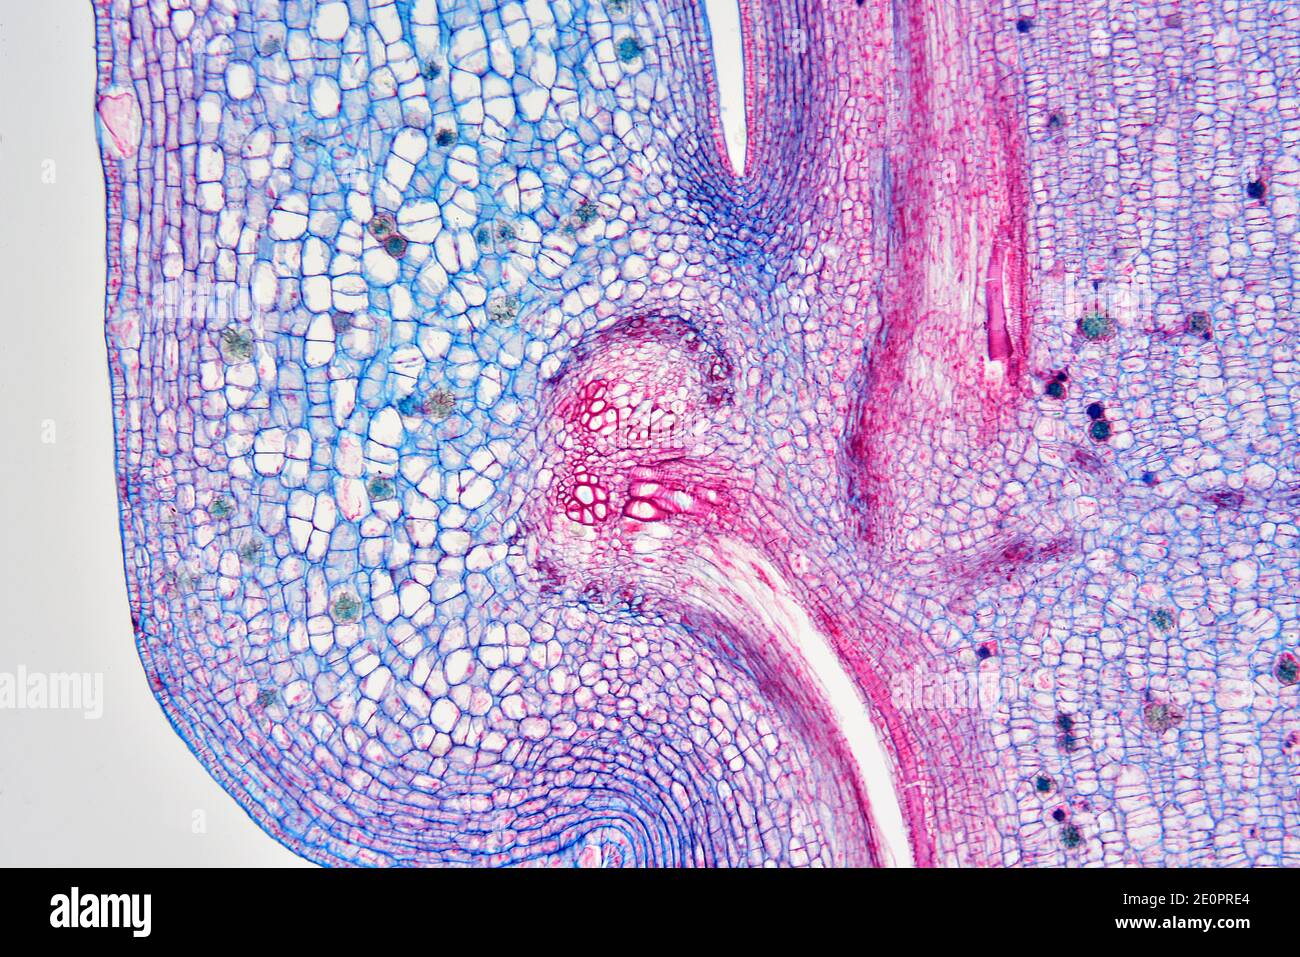 Nœud d'une tige de plante vasculaire. Photomicrographe X50 à 10 cm de large. Banque D'Images